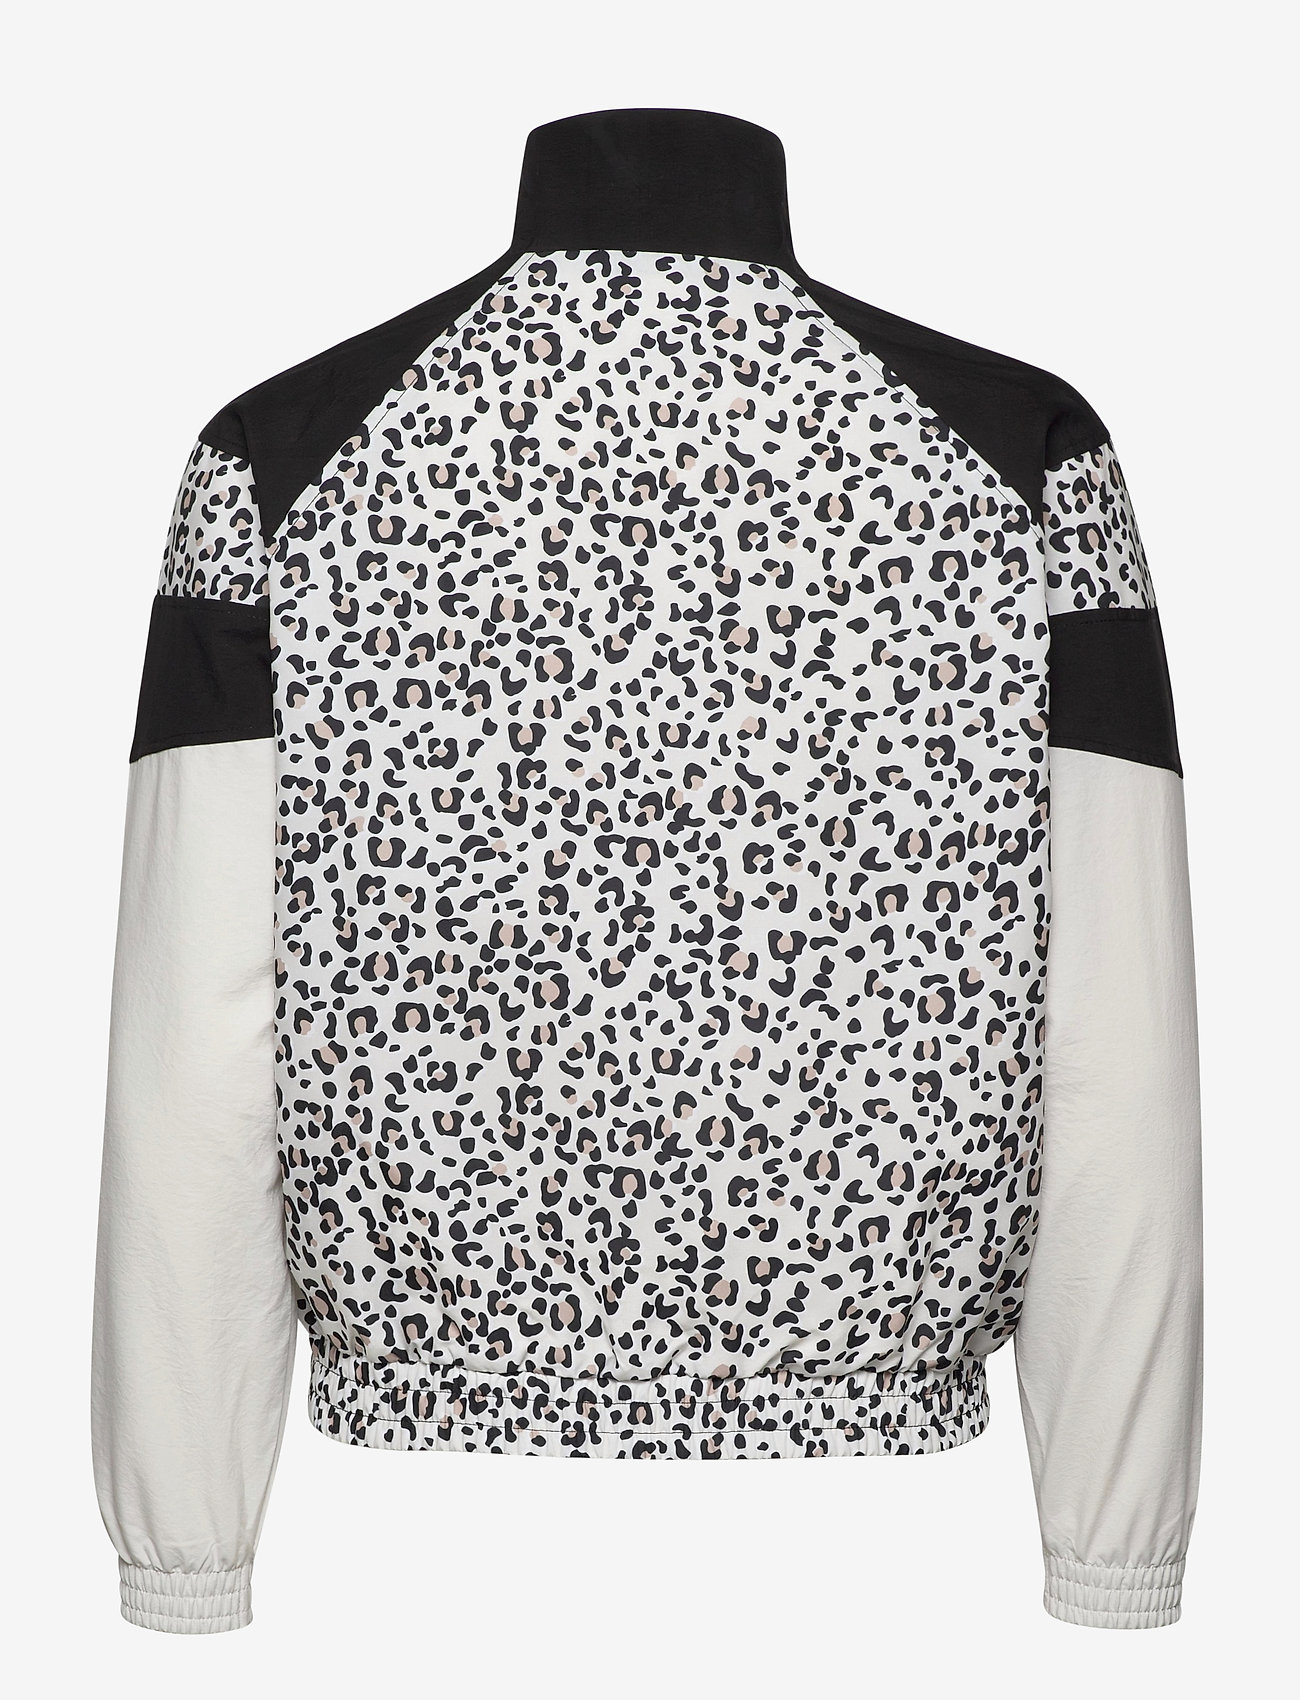 puma leopard print jacket